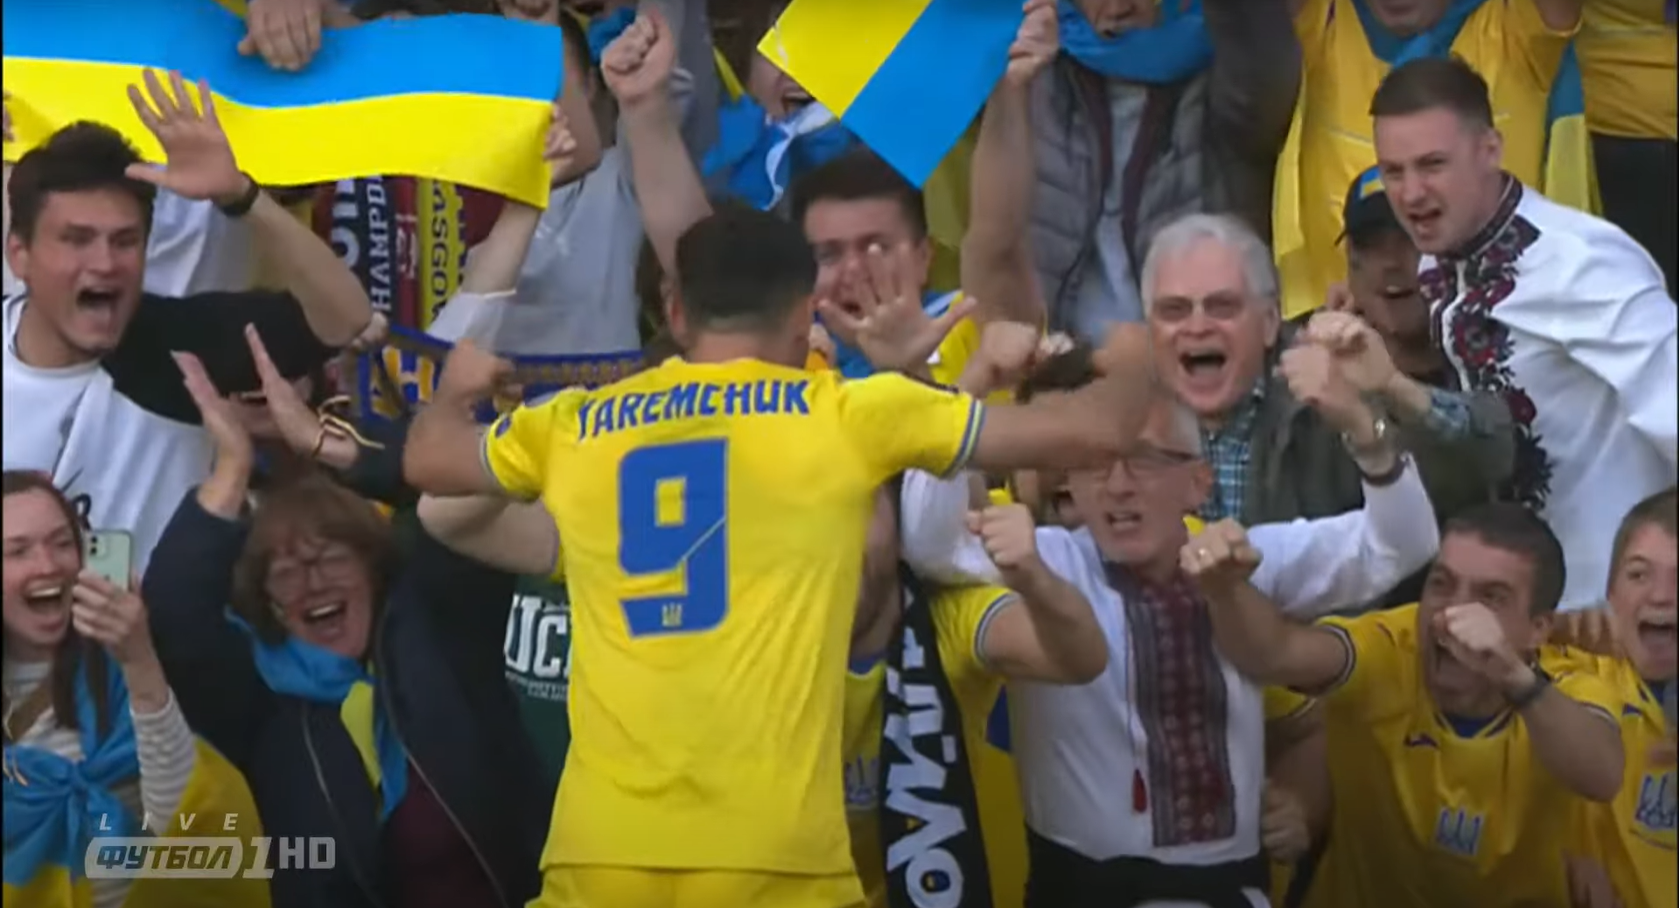 "Их страна в осаде, а люди убиты": игроков сборной Украины британские СМИ сравнили с крестоносцами, а Бущану угрожали "повесткой"